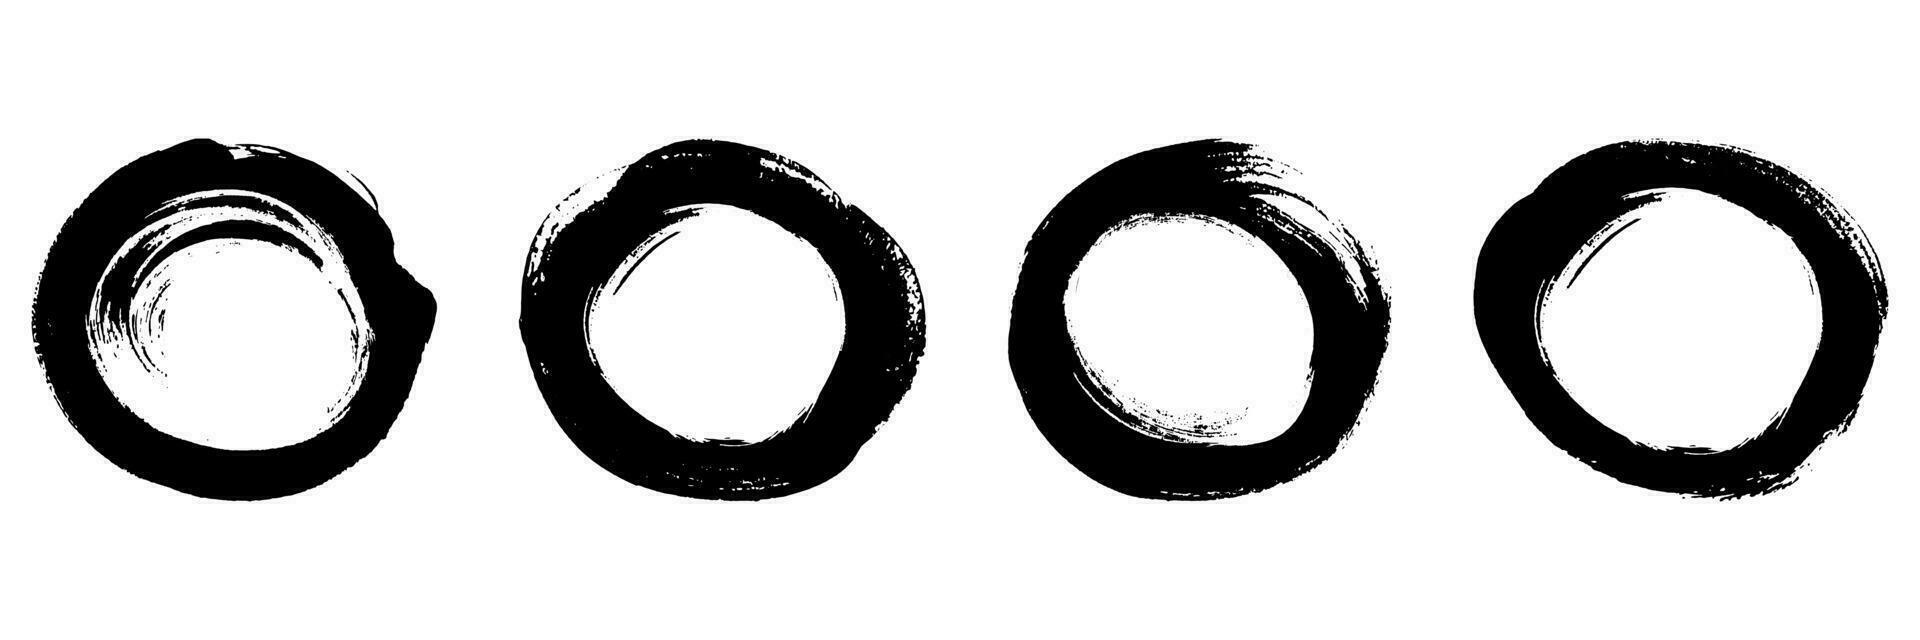 smutsig cirkel borsta symbol samling. runda form stroke bläck ram, grunge måla uppsättning. abstrakt svart cirkulär design, stämpel grafisk element. isolerat vektor illustration.